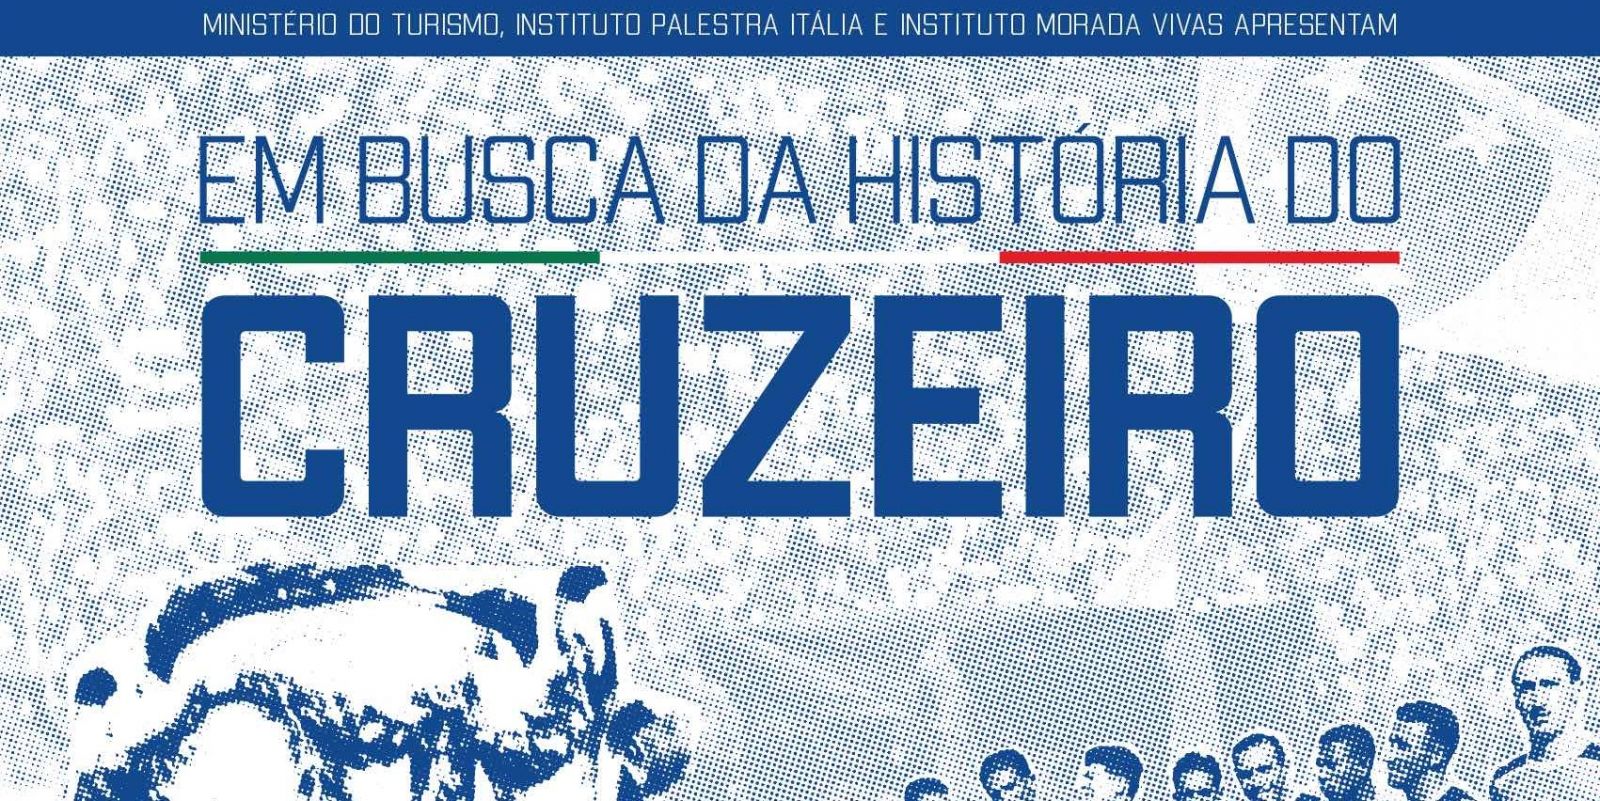 Documentário “Em busca da história do Cruzeiro” resgata fundação do Palestra e celebra Centenário